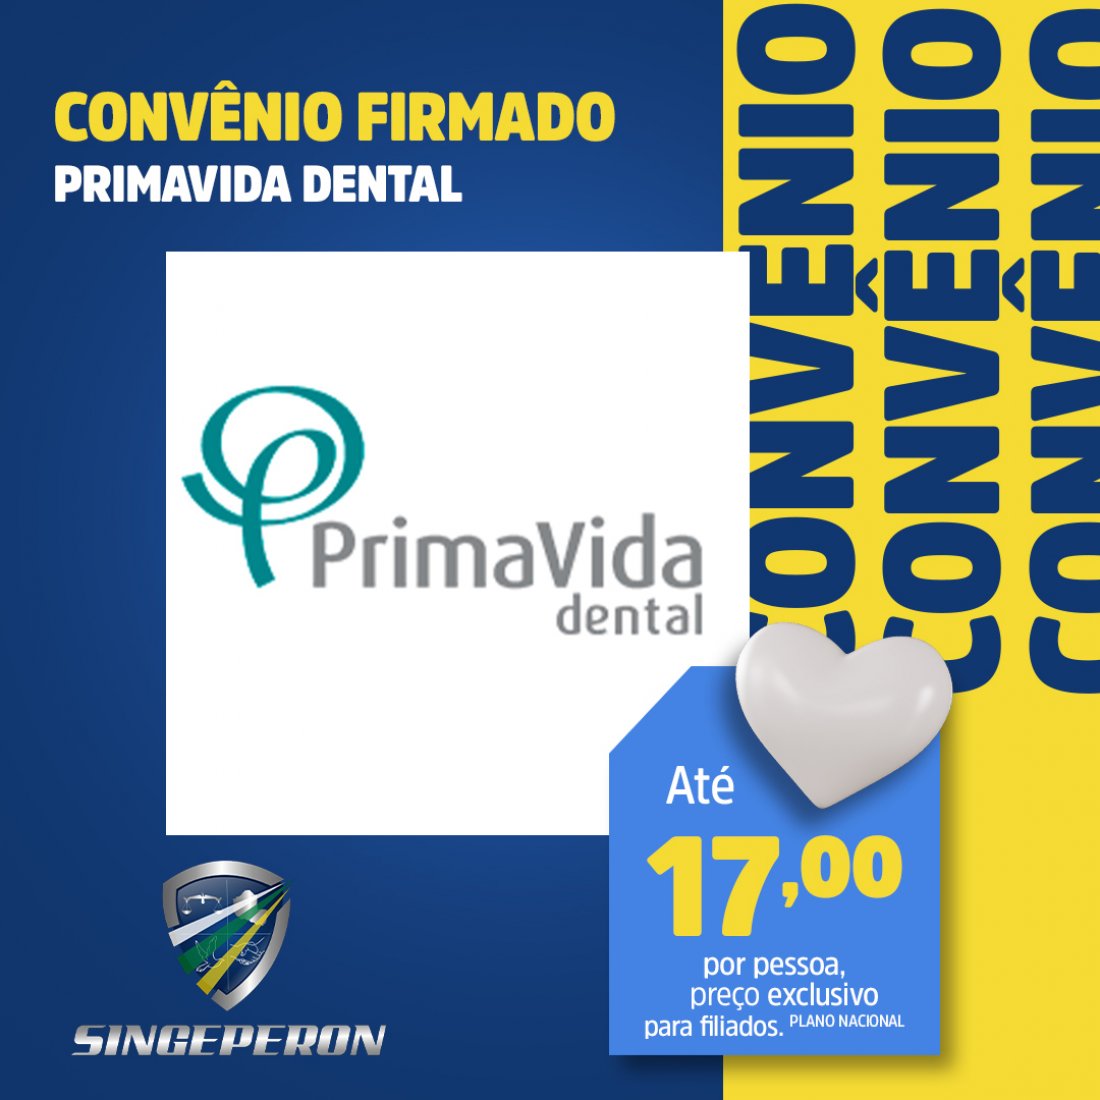 Singeperon firmou convênio com PrimaVida Dental